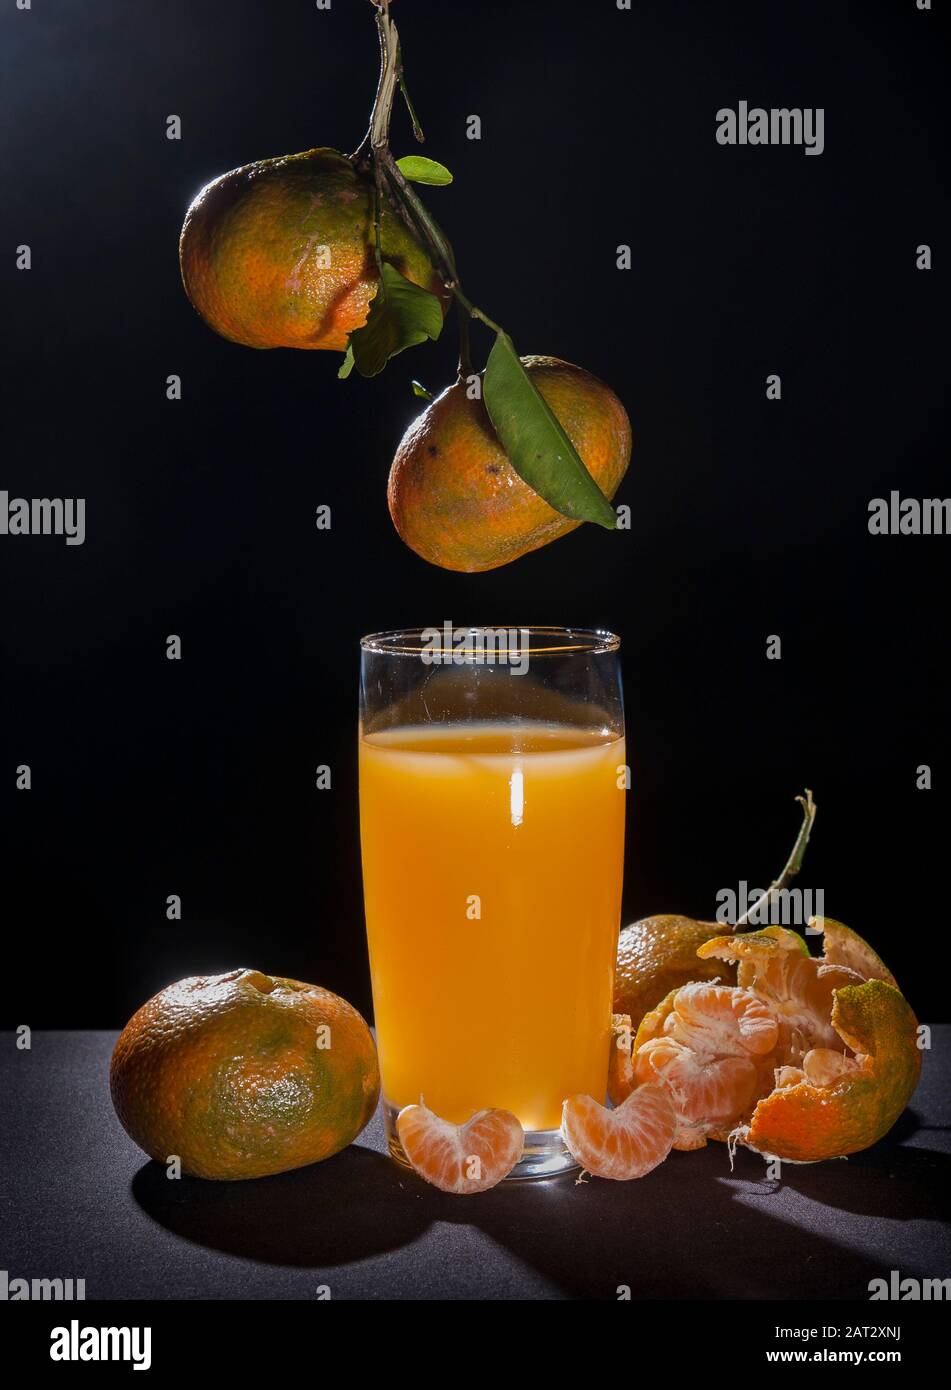 Mandarine und Glas, Zitrus reticula.auf dem Tisch mit schwarzem Hintergrund und Hintergrundbeleuchtung Stillleben.Mandarine Sorte Orange enthält Pomelo und c vi Stockfoto